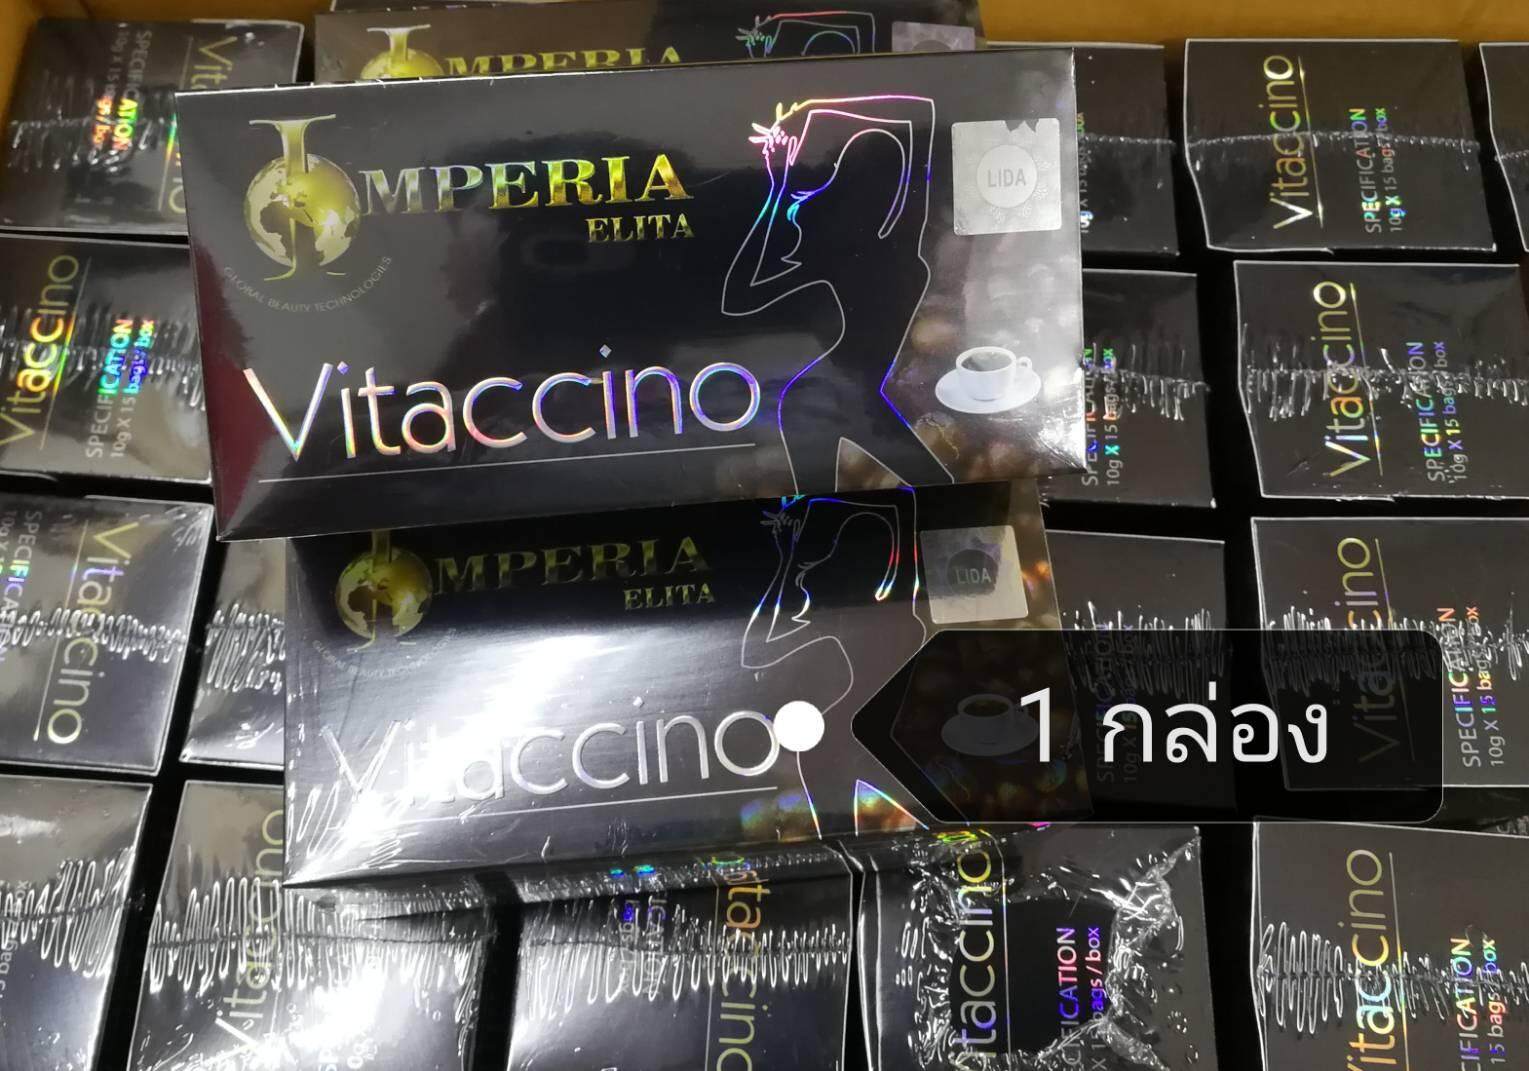 Vitaccino